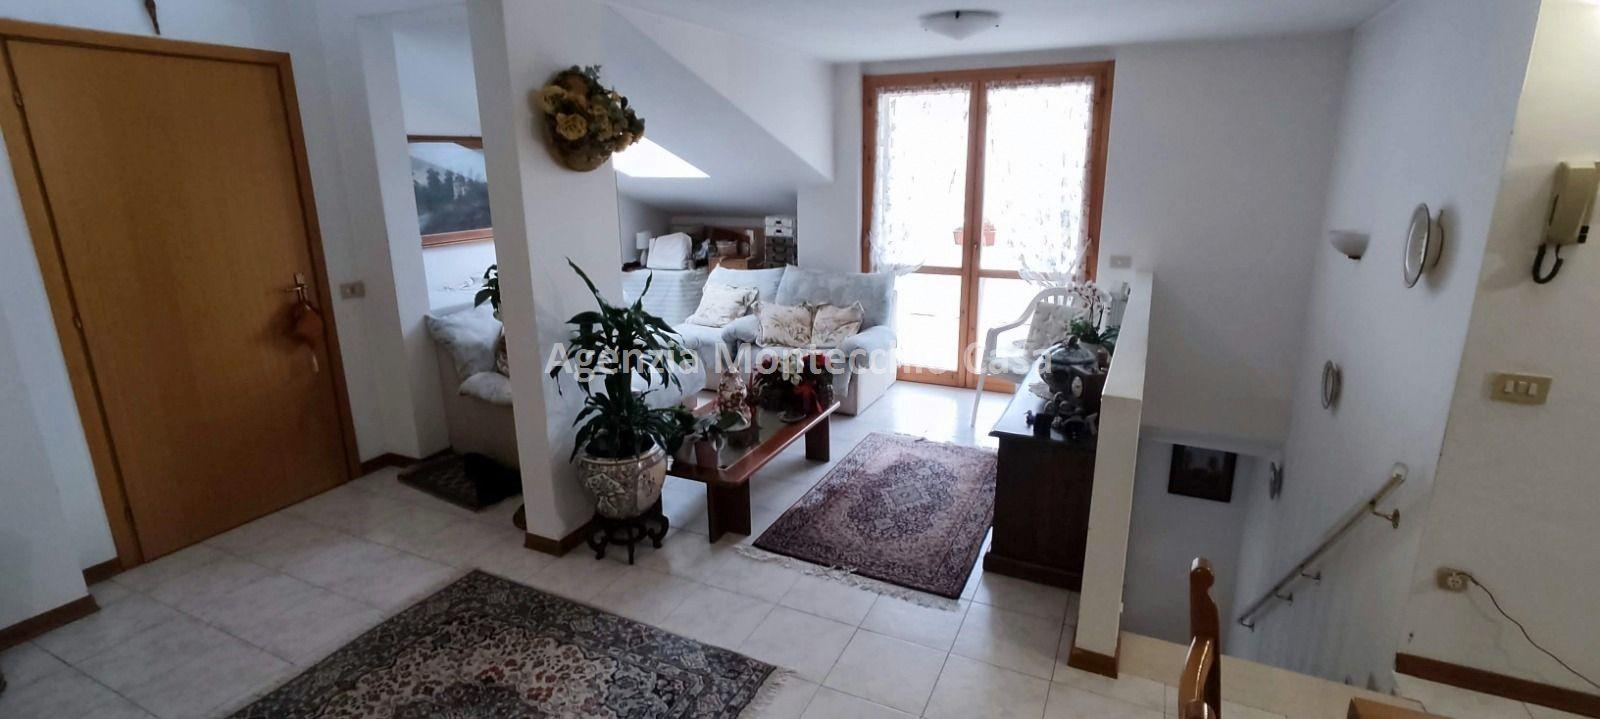 Appartamento in vendita a Vallefoglia, 5 locali, prezzo € 130.000 | PortaleAgenzieImmobiliari.it